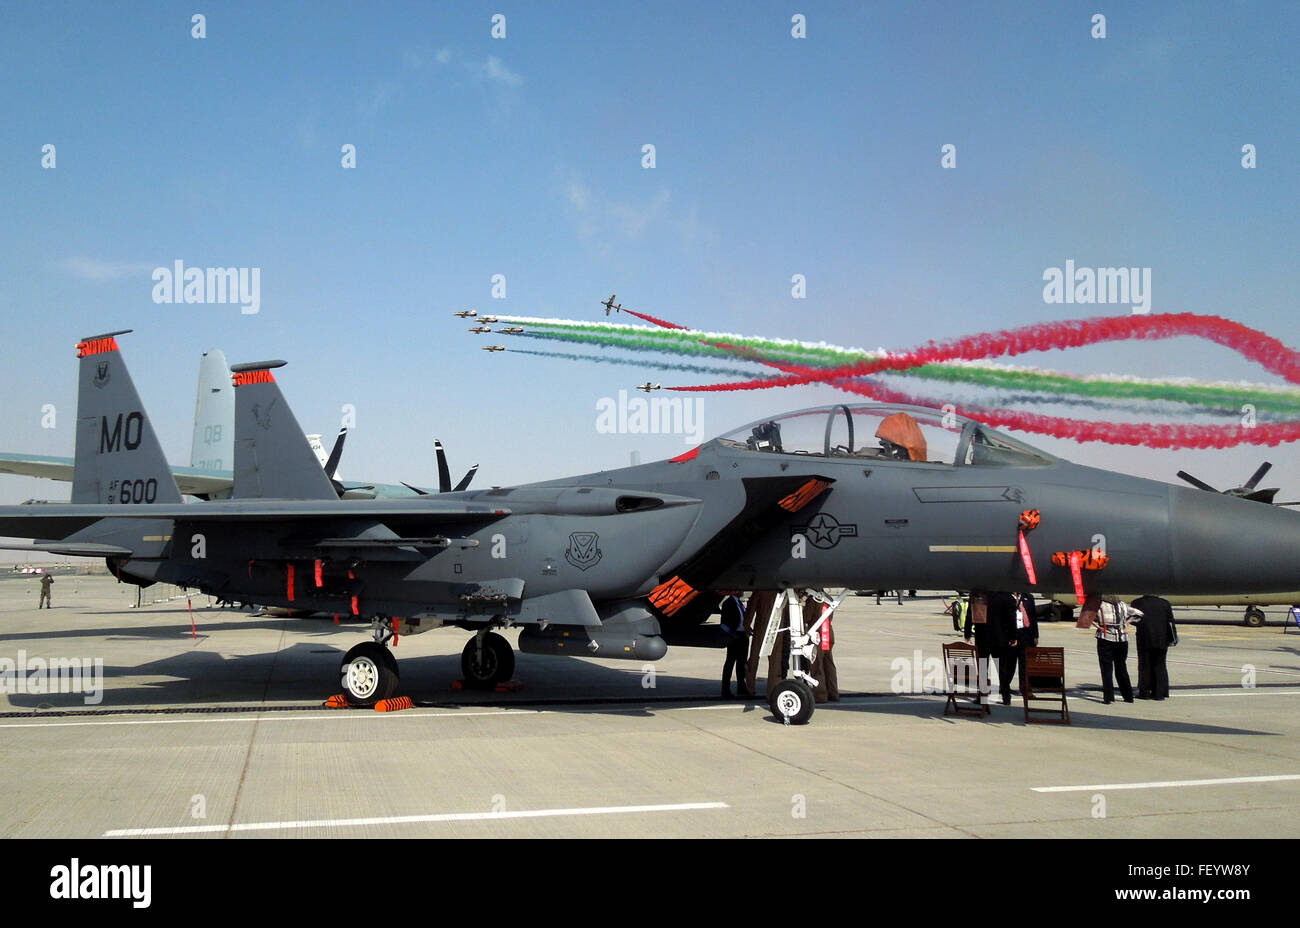 Die "Al Fursan" (The Knights), Vereinigte Arabische Emirate Air Force aerobatic Team, fliegen in Formation hinter einem U.S. Air Force F-15E Strike Eagle auf der Dubai Airshow 2015 8. November 2015 anzeigen Die F-15E wird derzeit auf 380. Air Expeditionary Wing, Südwest-Asien bereitgestellt. Stockfoto